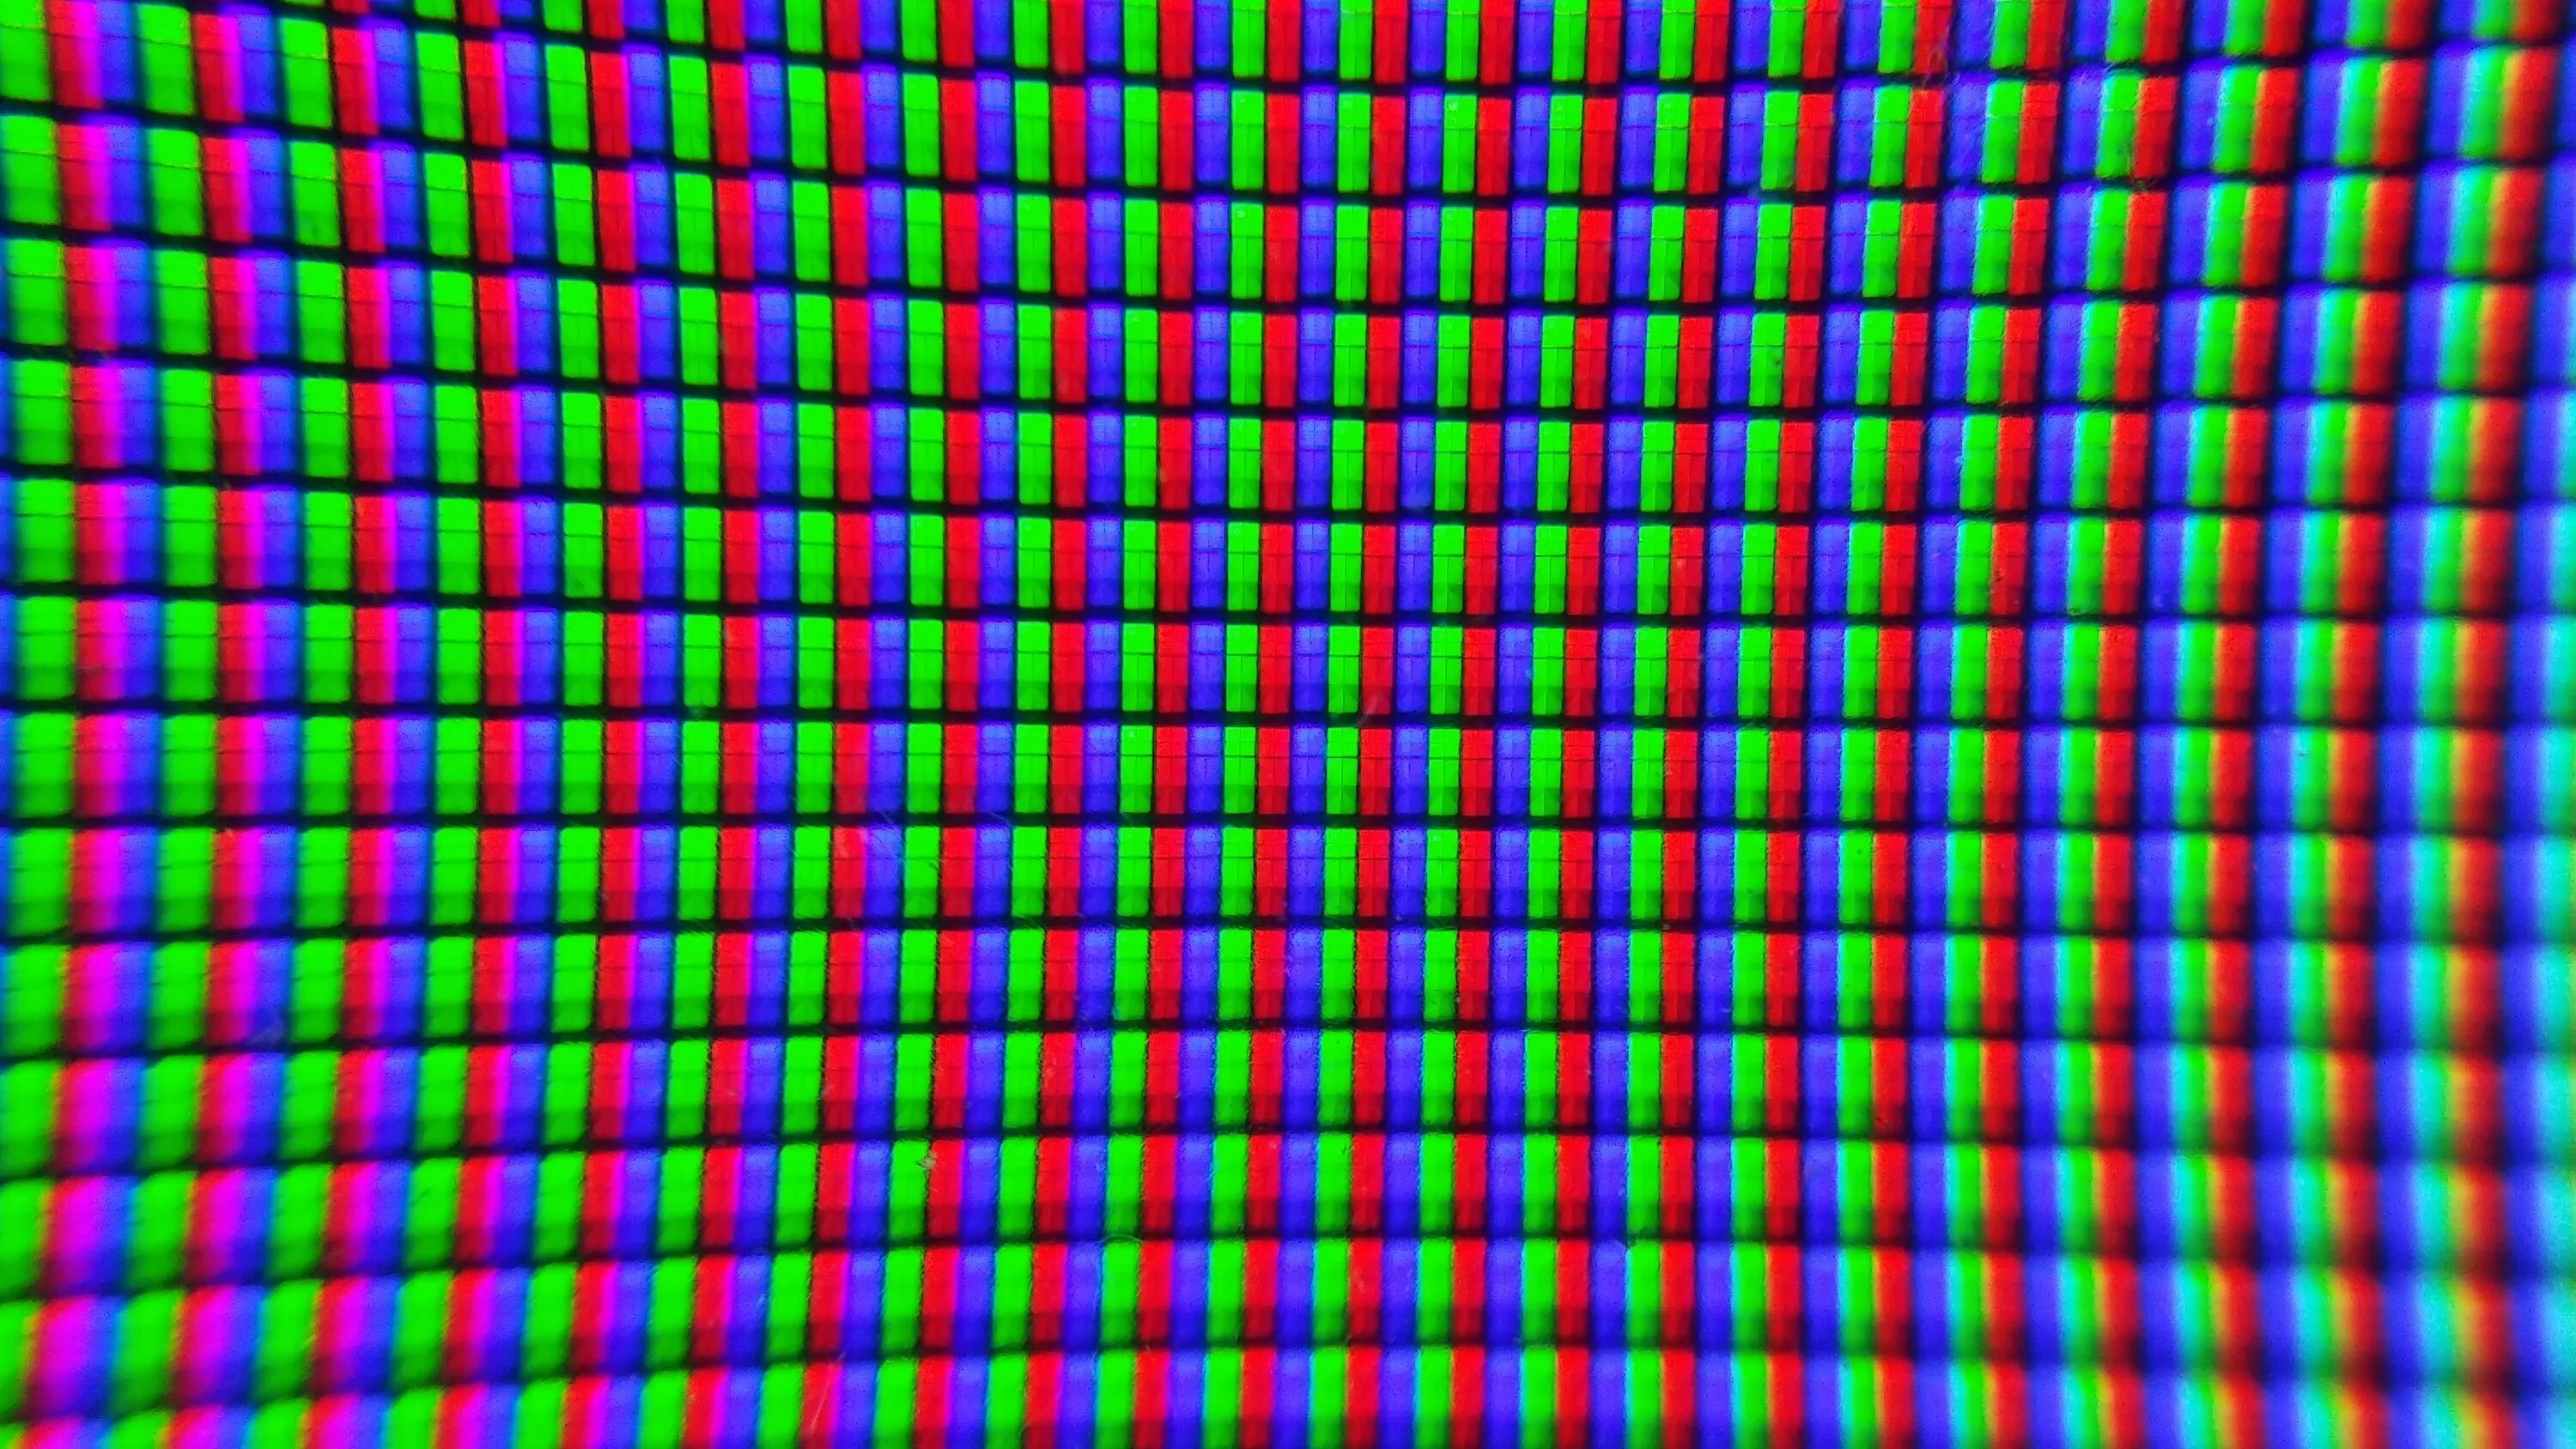 Display texture. Пиксели на экране. Матрица пиксели. Пиксели экрана компьютера. Пиксельный экран.